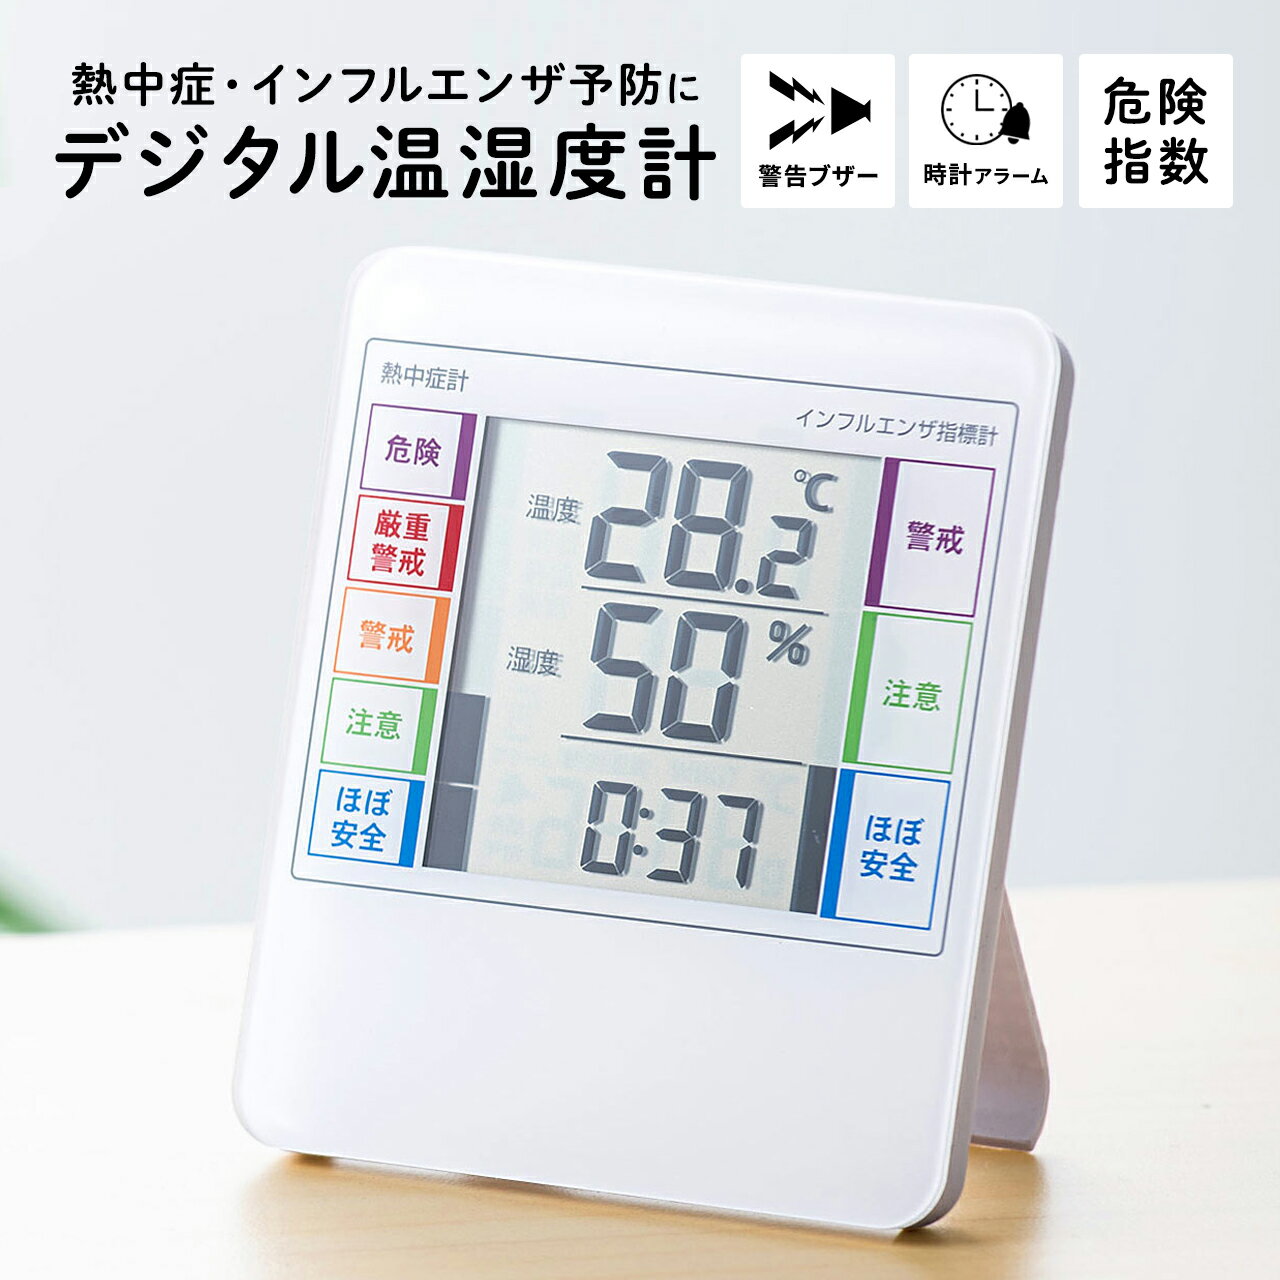 【楽天1位受賞】デジタル温湿度計 デジタル温度計 インフルエンザ表示付 風邪 熱中症 デジタル時計 アラーム付き 卓上 スタンド 壁掛け対応 高性能センサー搭載 警告ブザー付 温度計 湿度計 室…